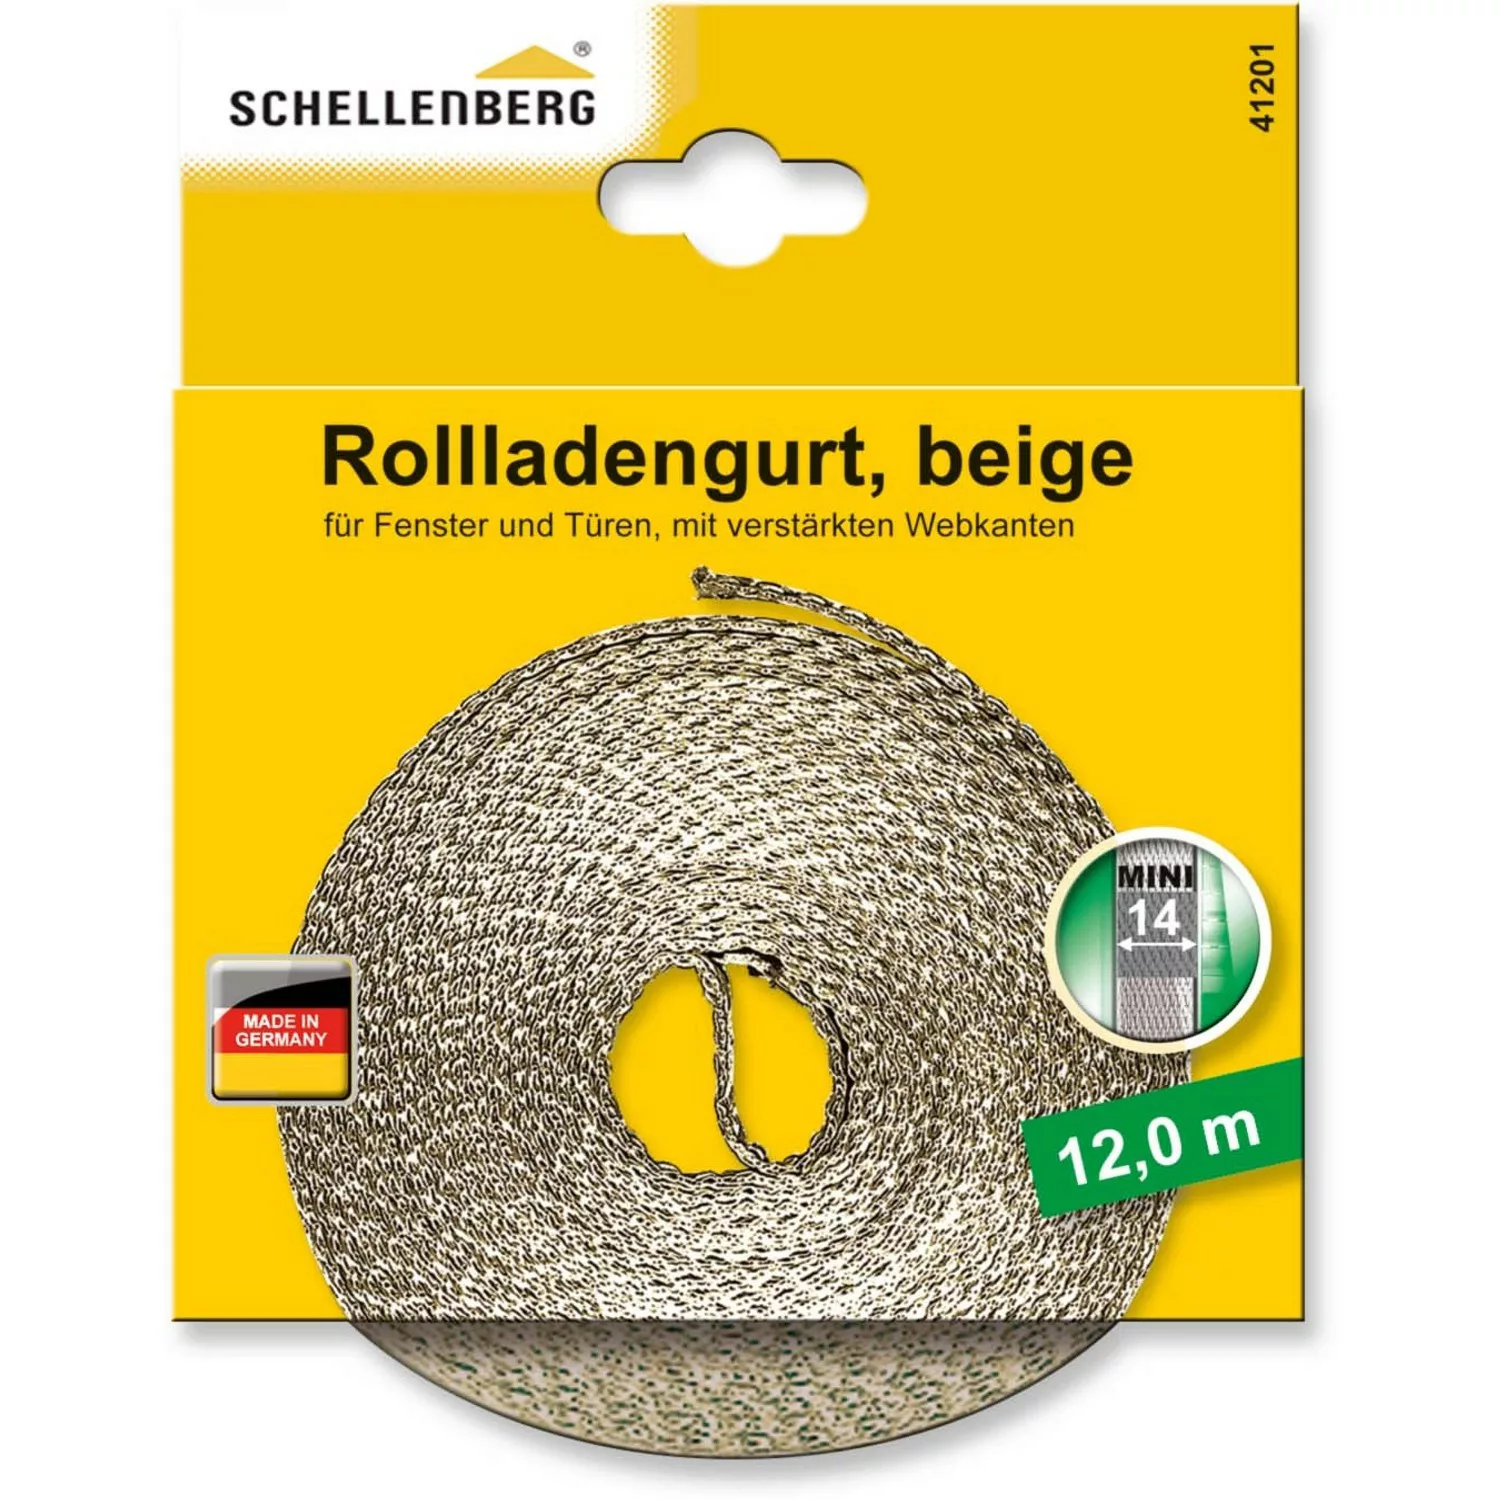 Schellenberg Rollladengurt Mini 14 mm 12 m Beige günstig online kaufen